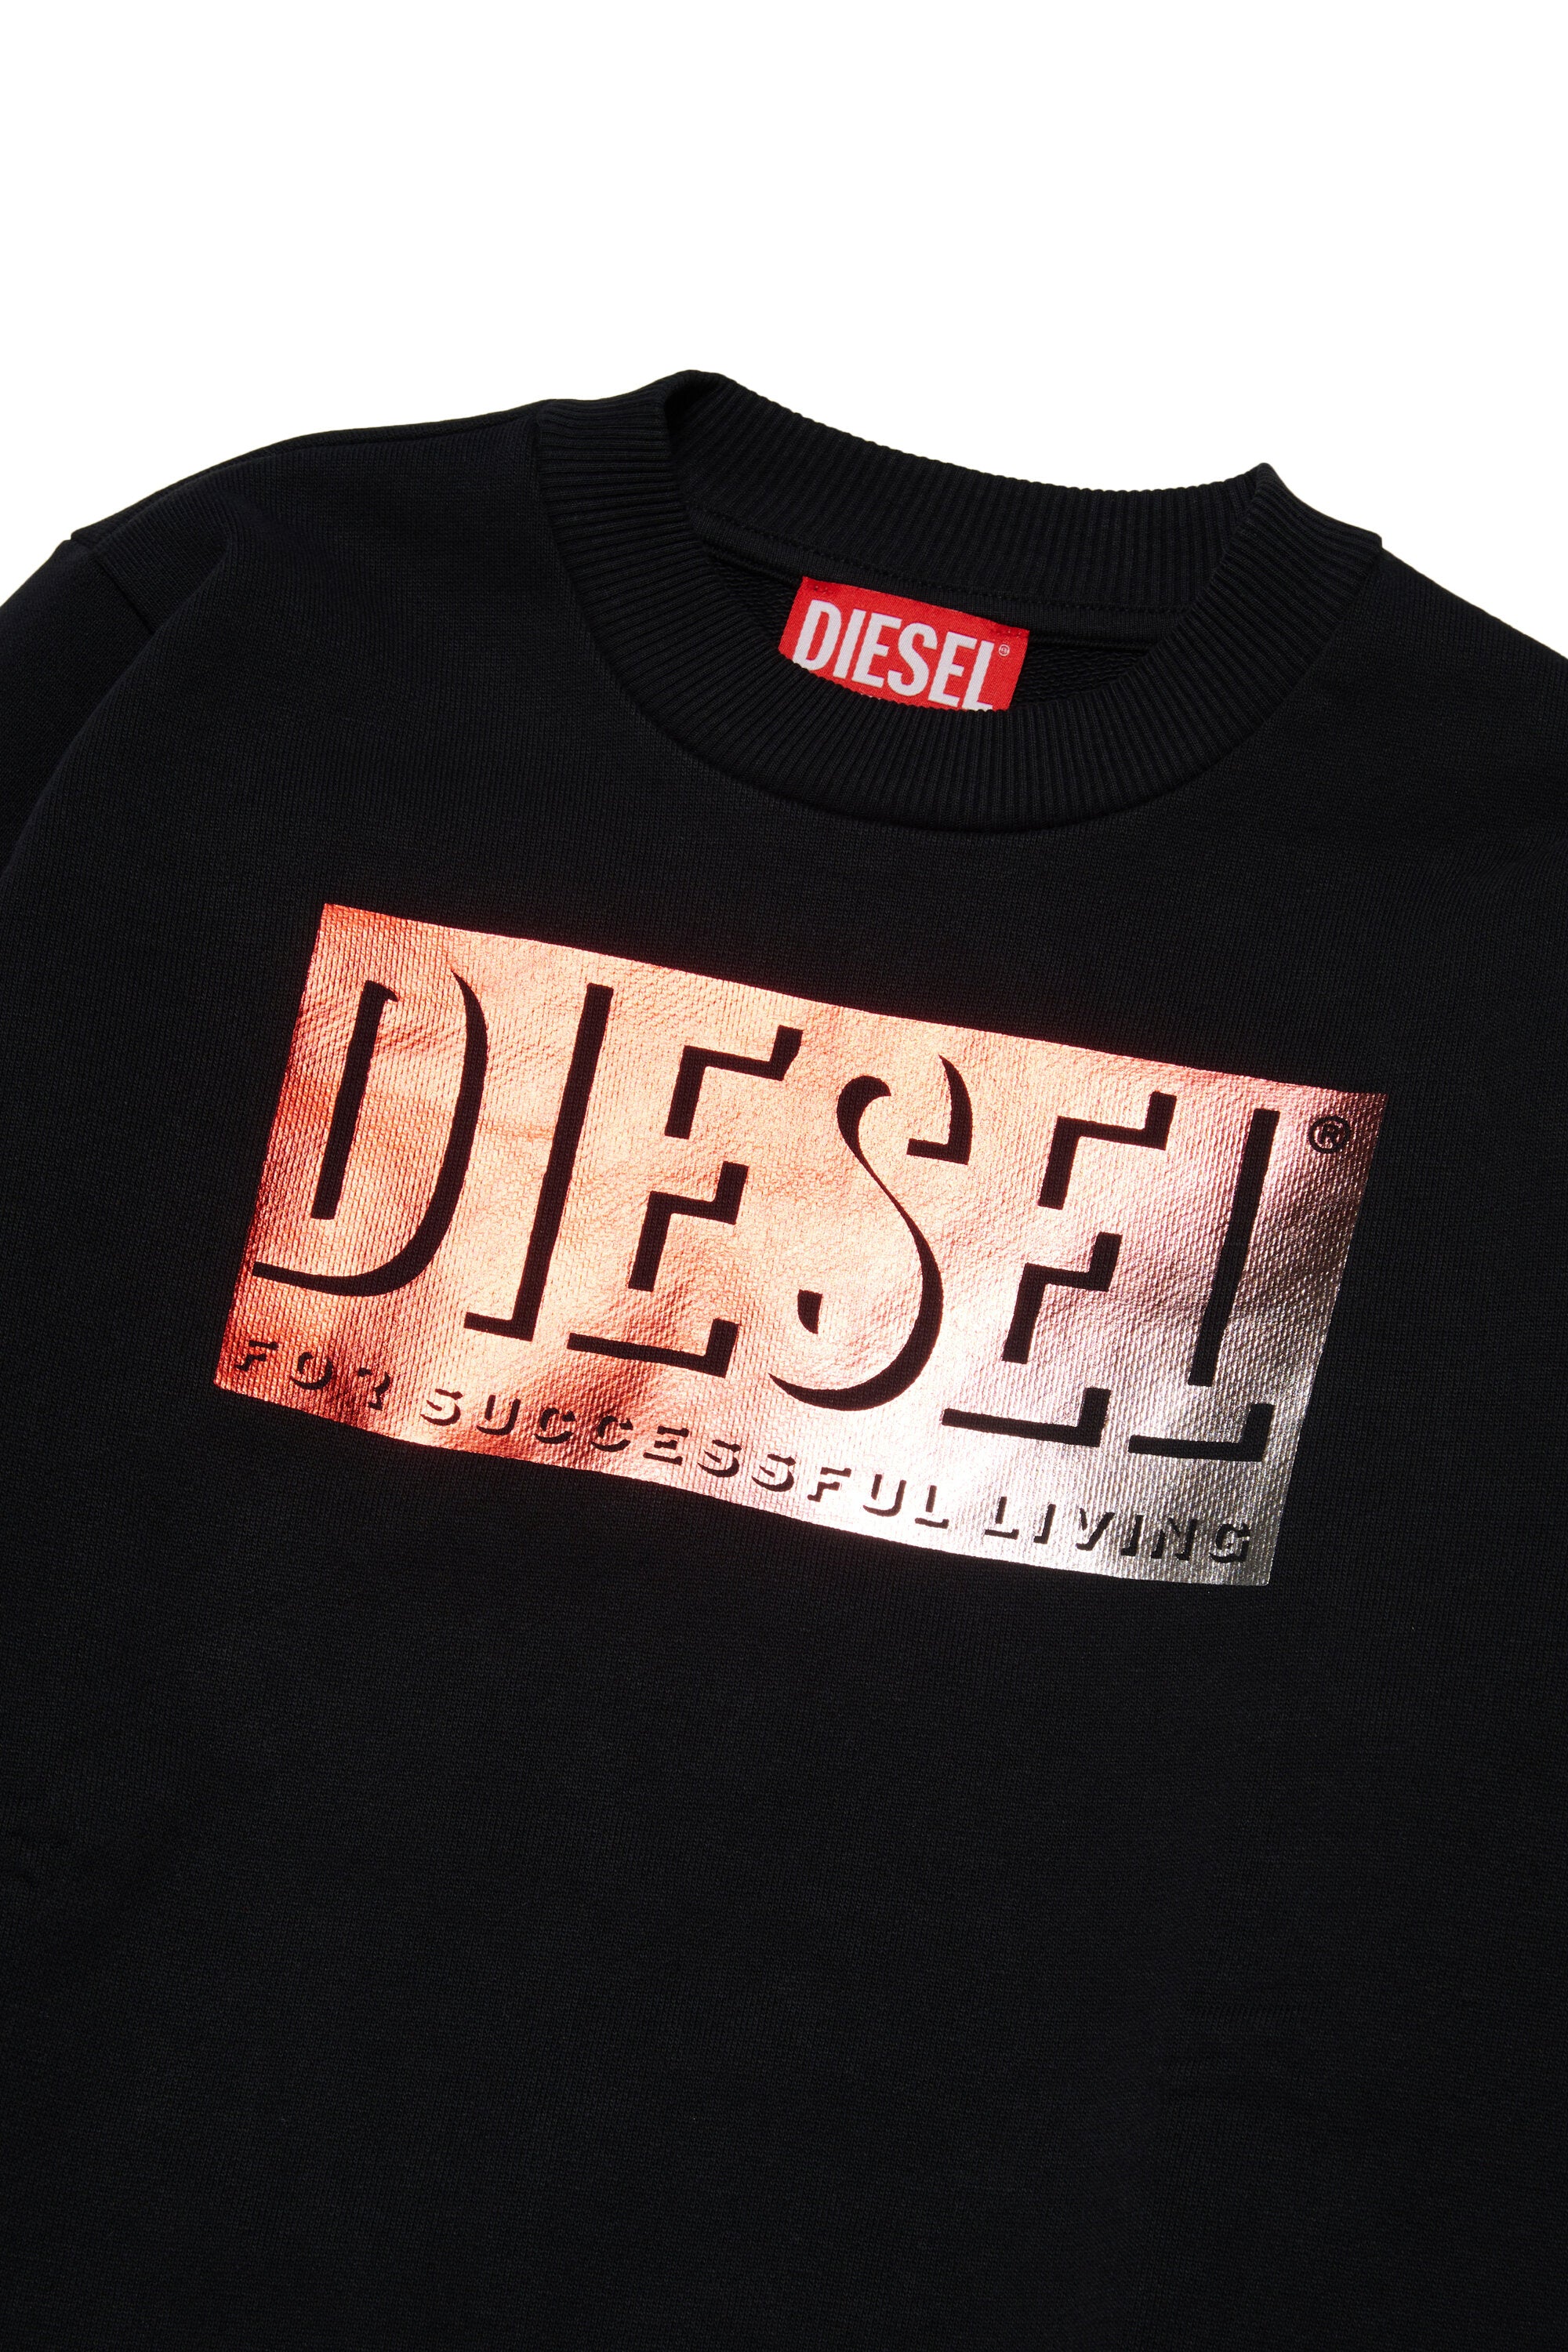 Crewneck sweatshirt with metallic effect Diesel graphics